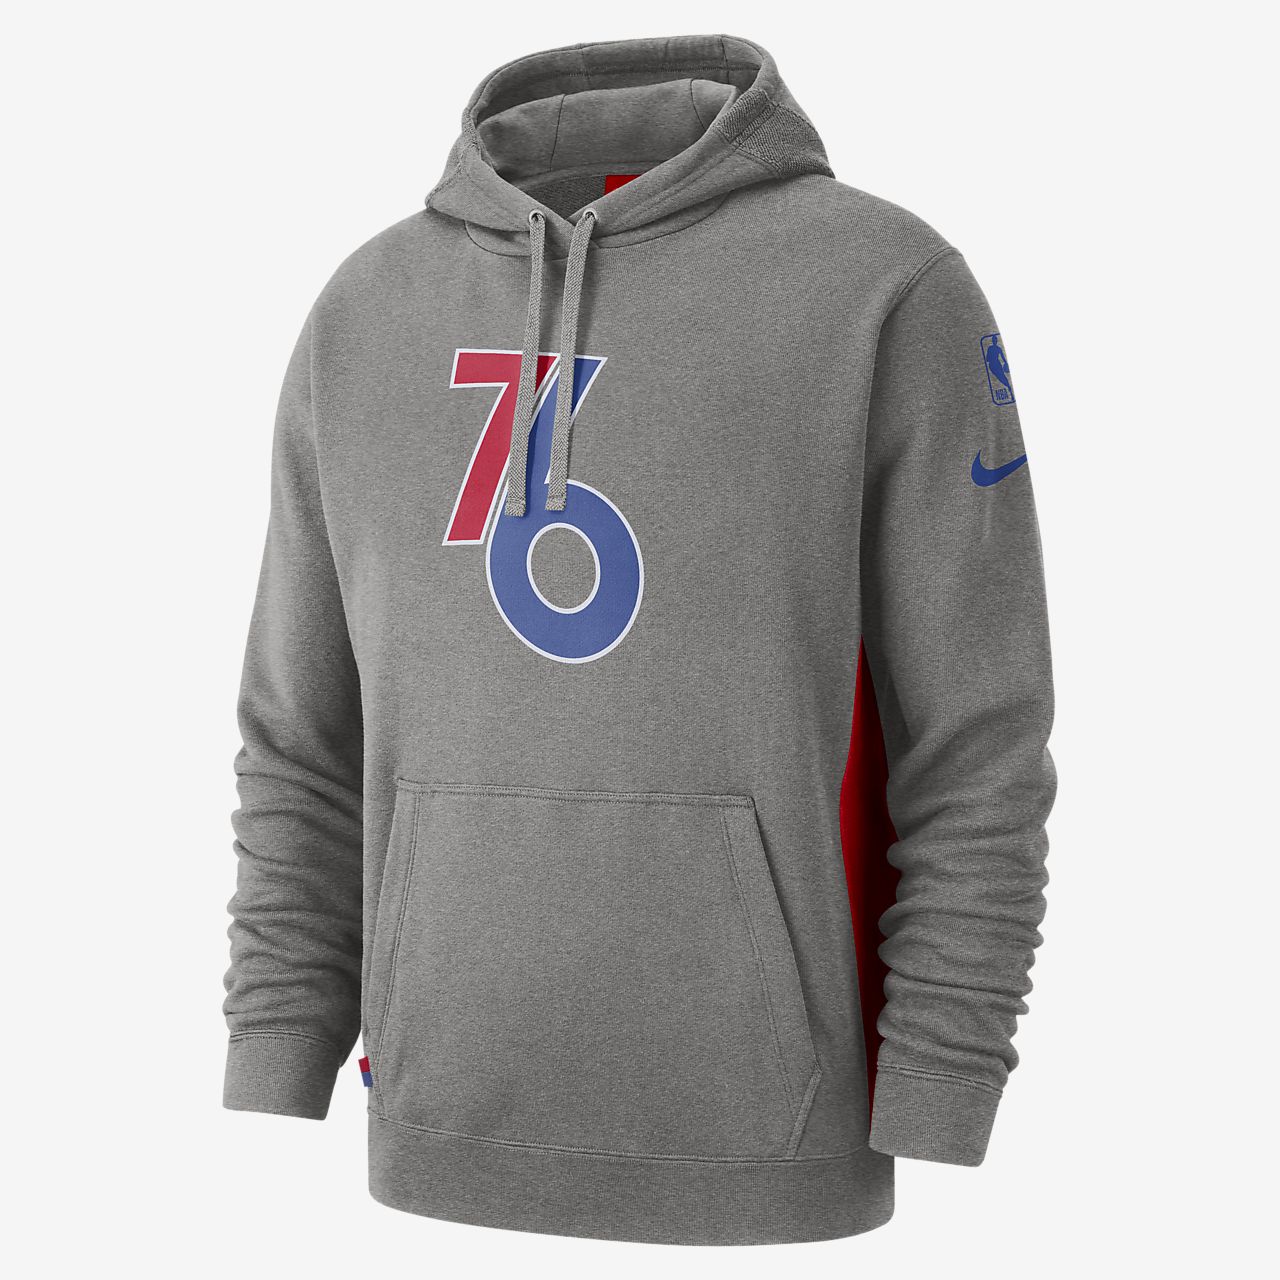 76ers hoodie nike